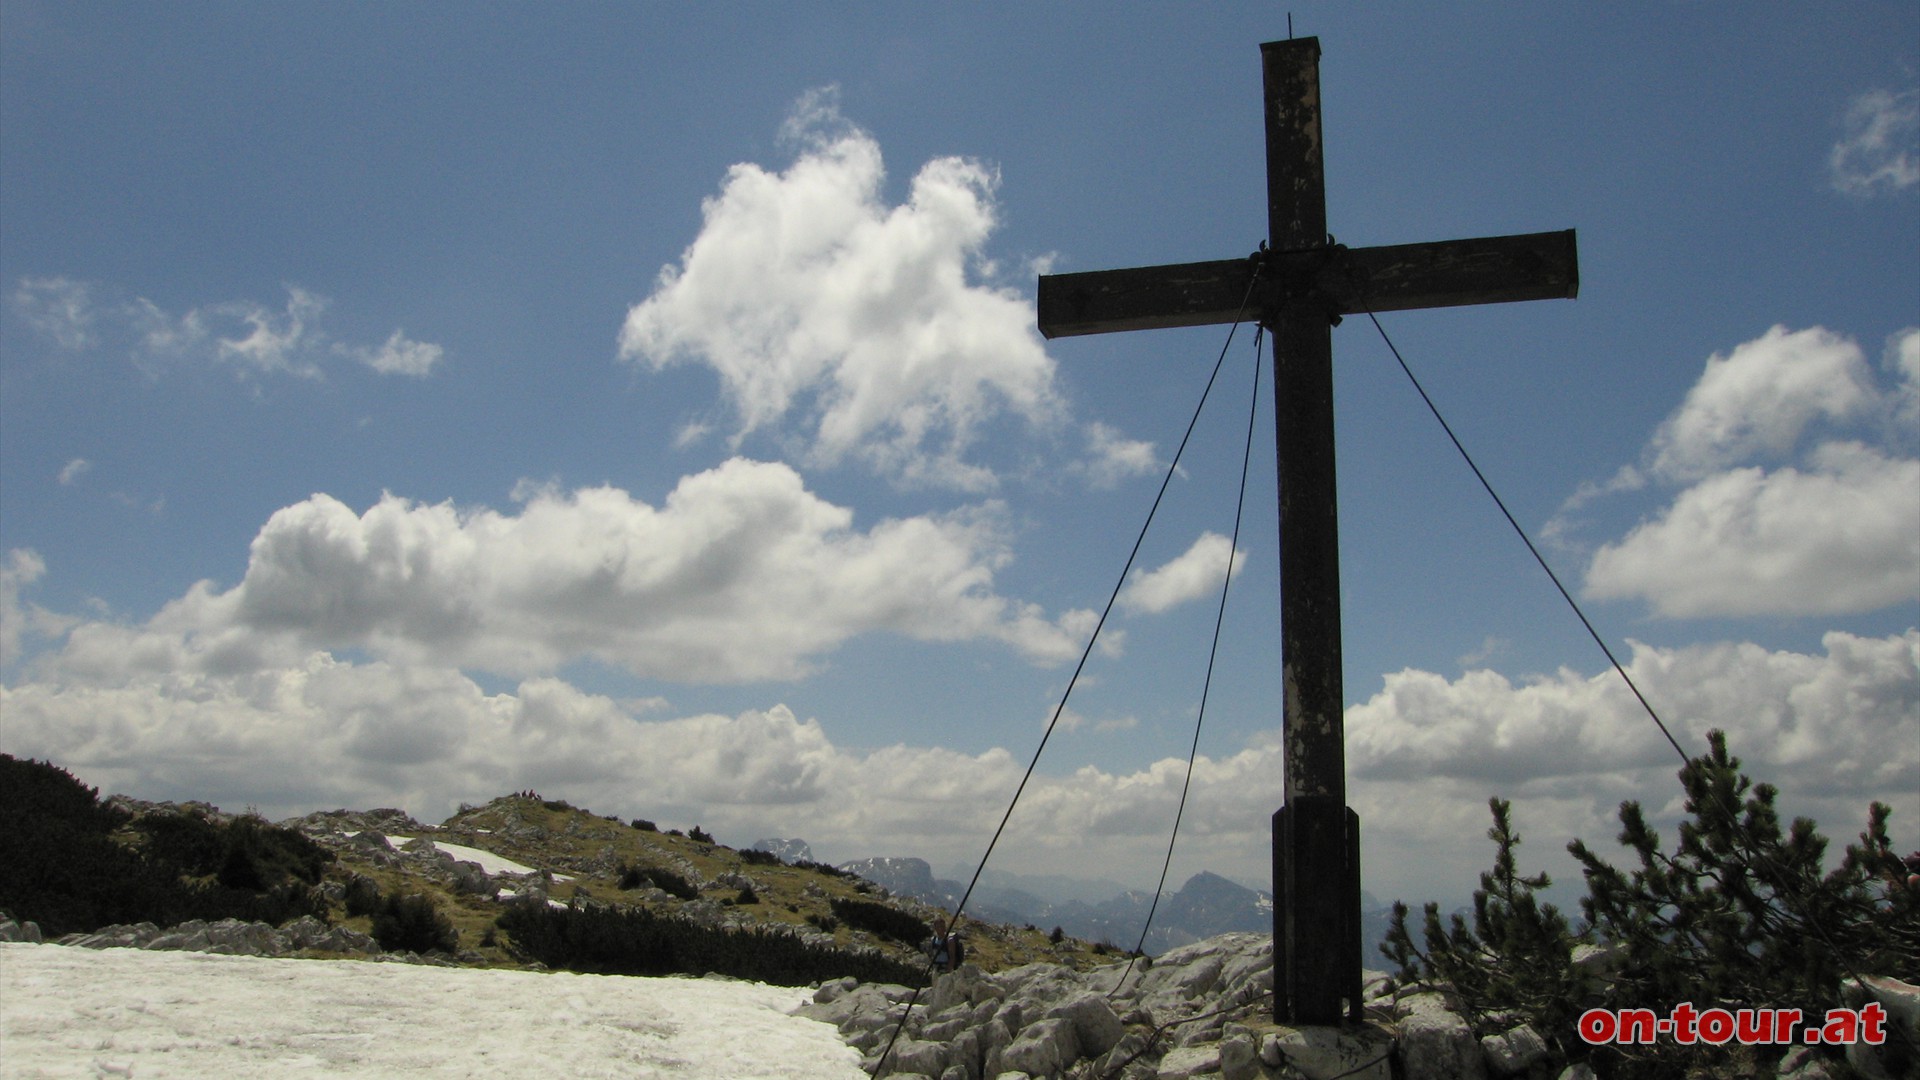 Das Gipfelkreuz befindet sich nicht direkt auf der höchsten Erhebung. Der wirklich sehenswerte und weitläufige Panoramablick gelangt erst ein paar Höhenmeter weiter so richtig zur Entfaltung.